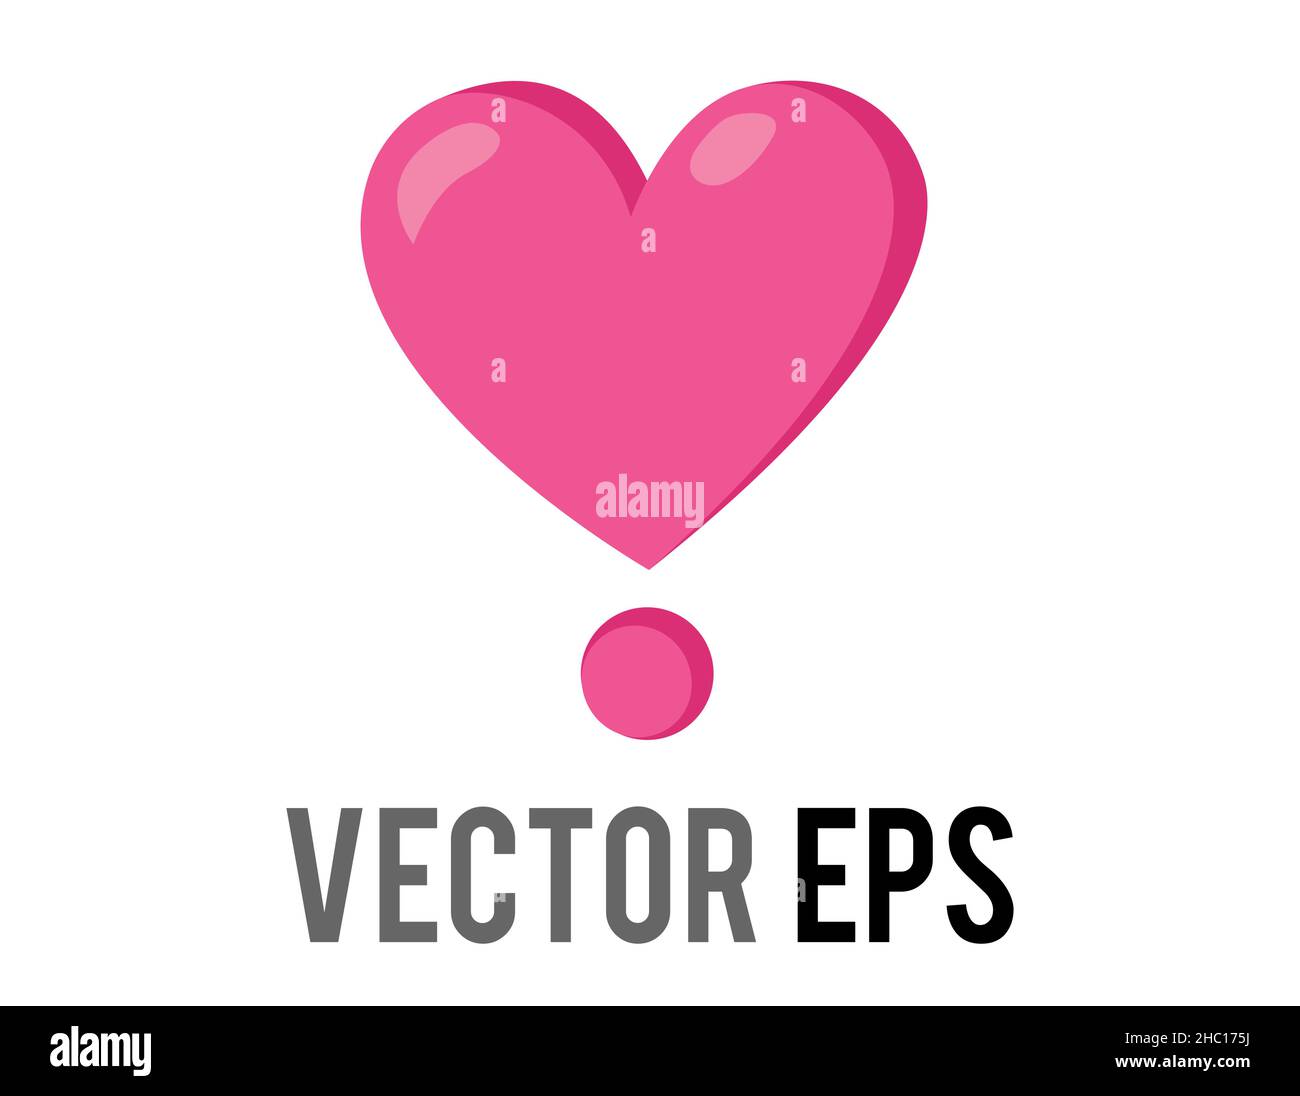 Das isolierte Vektor-Symbol Love Pink, glänzend, mit dem Herz-Ausrufezeichen, wird für den Ausdruck von Liebe, Leidenschaft und Romantik verwendet Stock Vektor